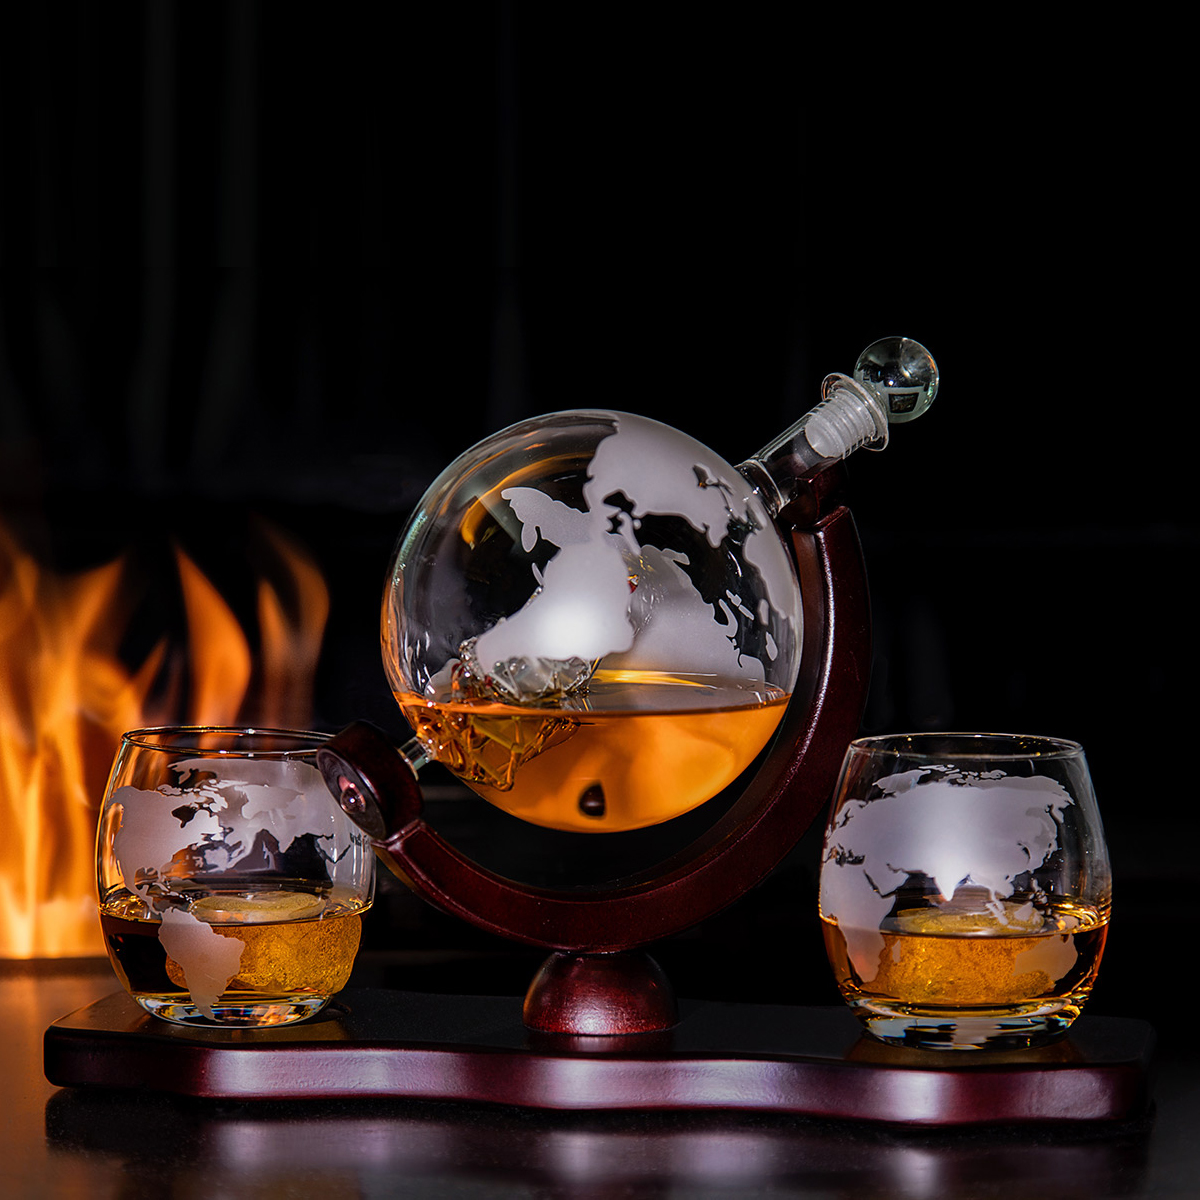 Whisky Gläser Totenkopf Personalisierte Geschenke Männer Whiskey Gläser  Totenkopf Geschenke Whisky Glas Totenkopf Gläser Weihnachtsgeschenke für